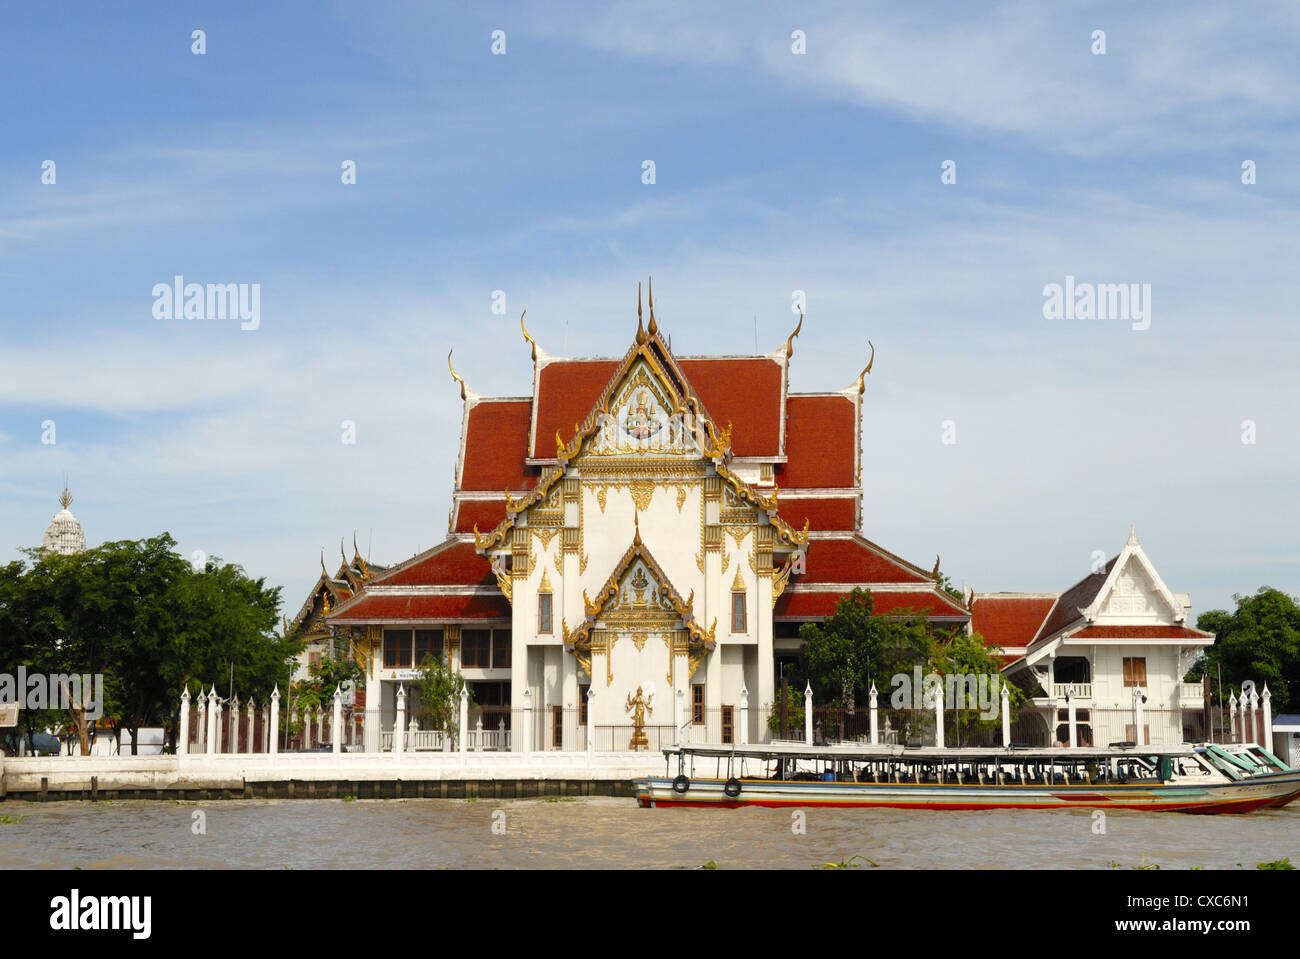 Temple at the banks of Chao Phraya River, Bangkok, Thailand Stock Photo